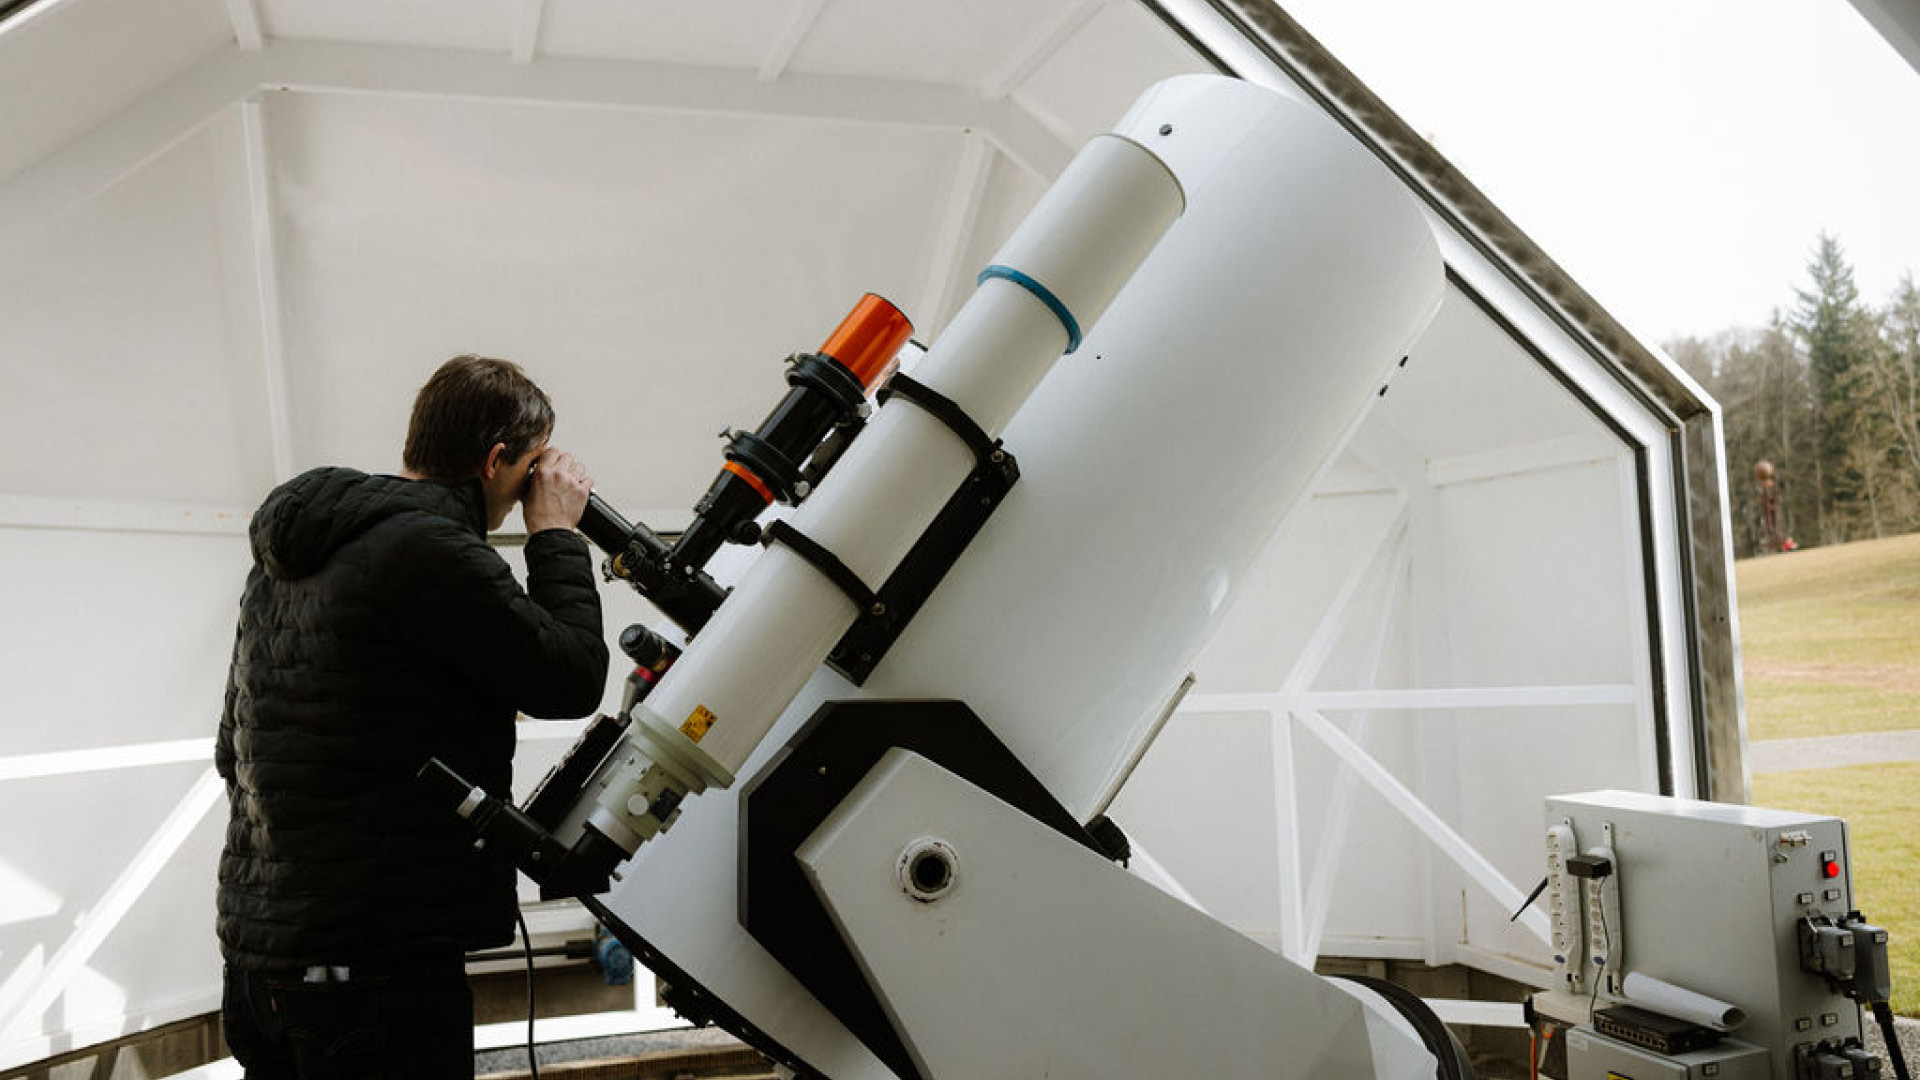 Soirée astronomique: Comment fonctionne un observatoire ?